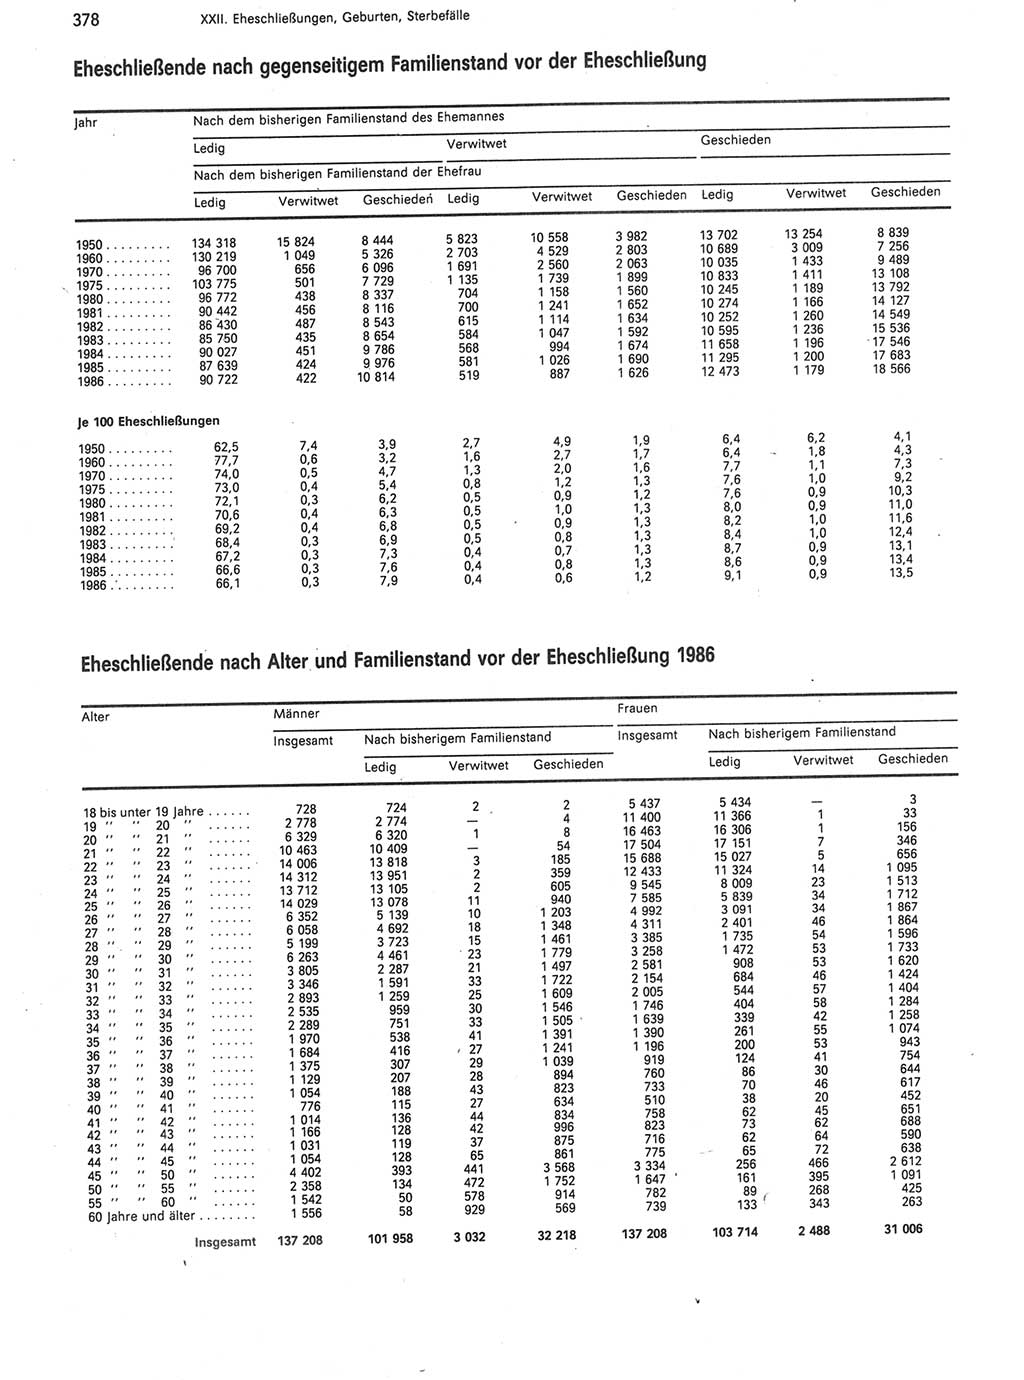 Statistisches Jahrbuch der Deutschen Demokratischen Republik (DDR) 1988, Seite 378 (Stat. Jb. DDR 1988, S. 378)